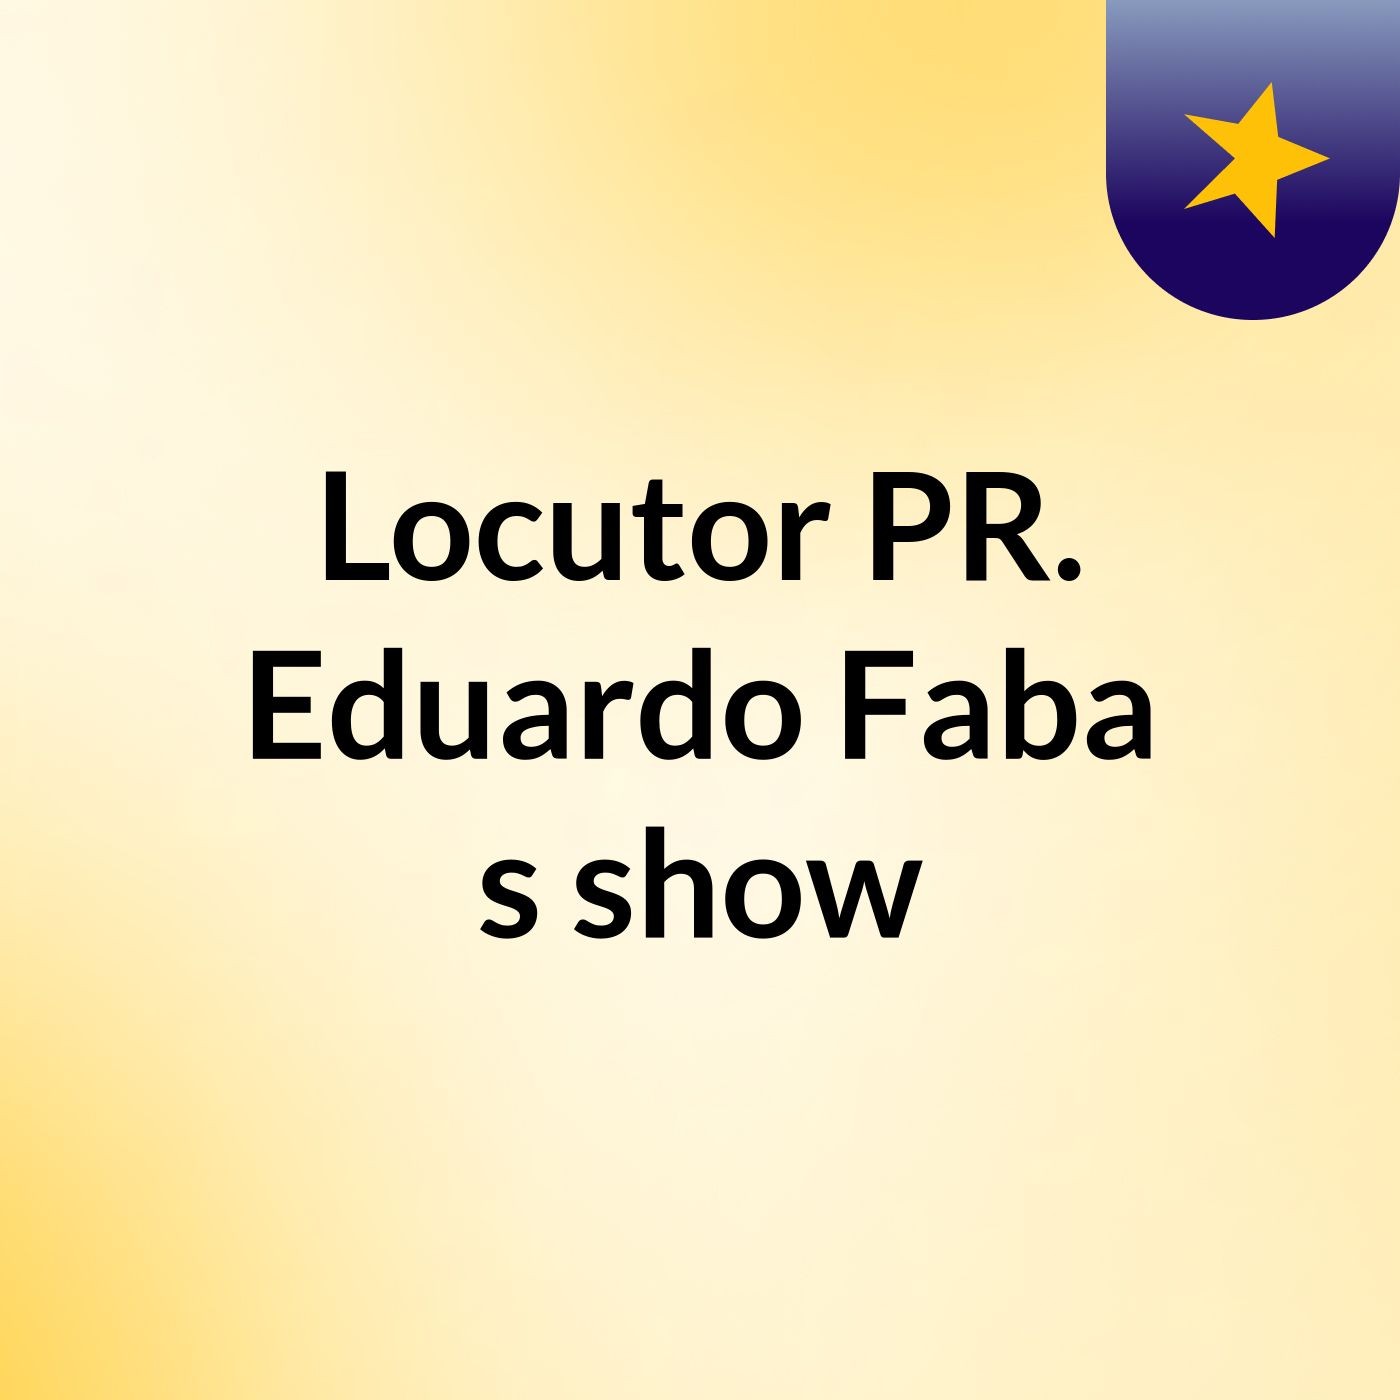 Locutor PR. Eduardo Faba's show